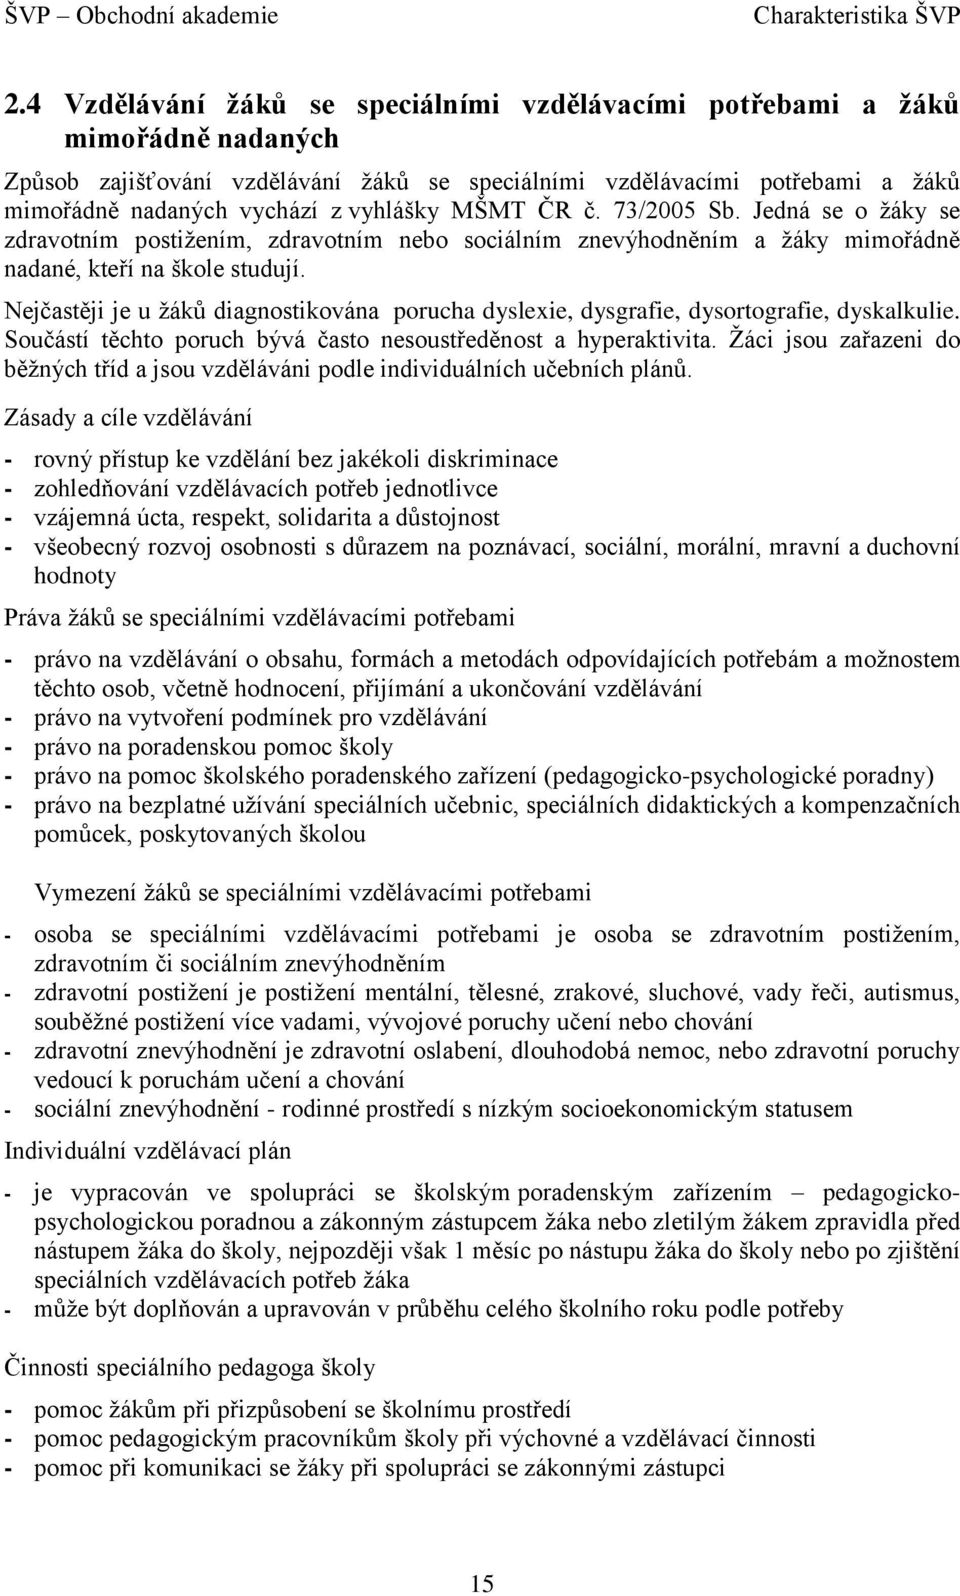 MŠMT ČR č. 73/2005 Sb. Jedná se o žáky se zdravotním postižením, zdravotním nebo sociálním znevýhodněním a žáky mimořádně nadané, kteří na škole studují.